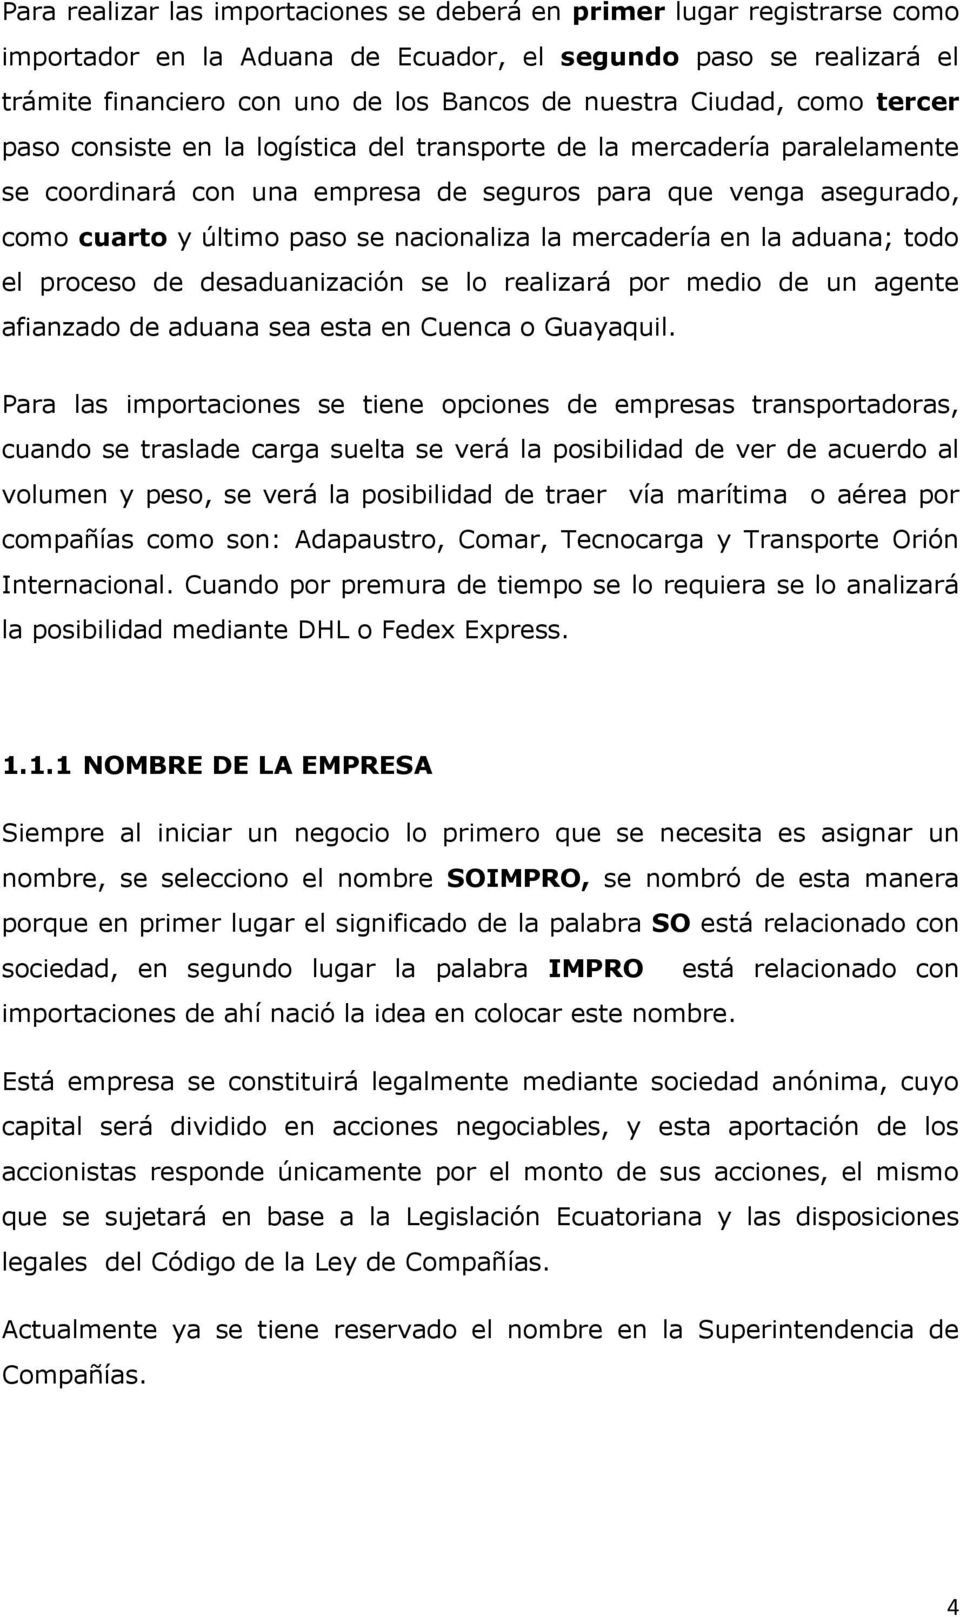 nacionaliza la mercadería en la aduana; todo el proceso de desaduanización se lo realizará por medio de un agente afianzado de aduana sea esta en Cuenca o Guayaquil.